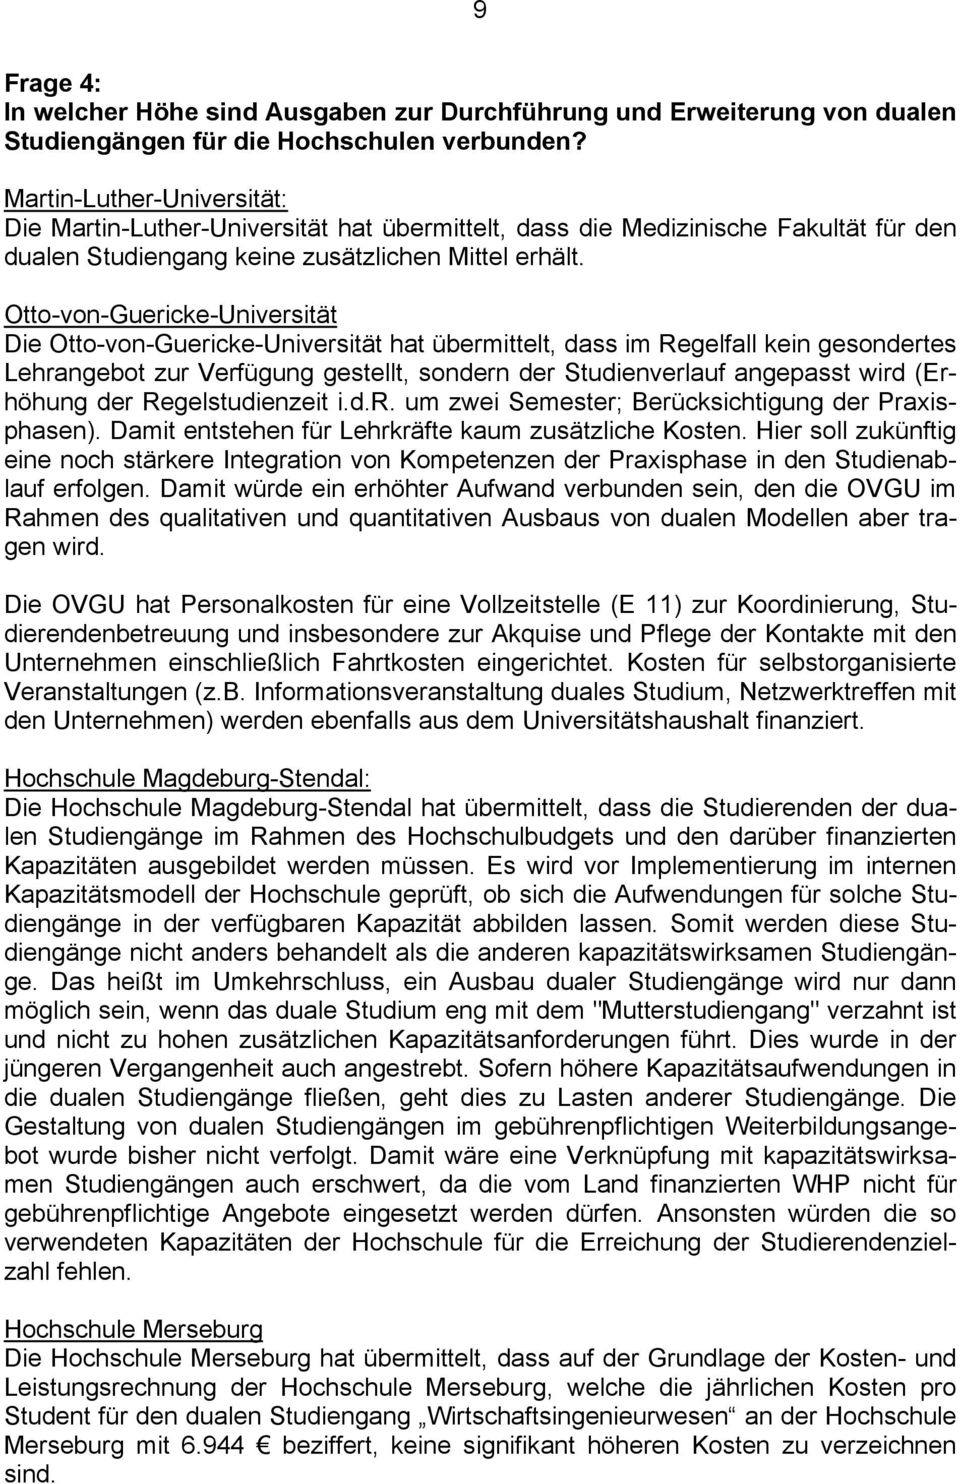 Otto-von-Guericke-Universität Die Otto-von-Guericke-Universität hat übermittelt, dass im Regelfall kein gesondertes Lehrangebot zur Verfügung gestellt, sondern der Studienverlauf angepasst wird